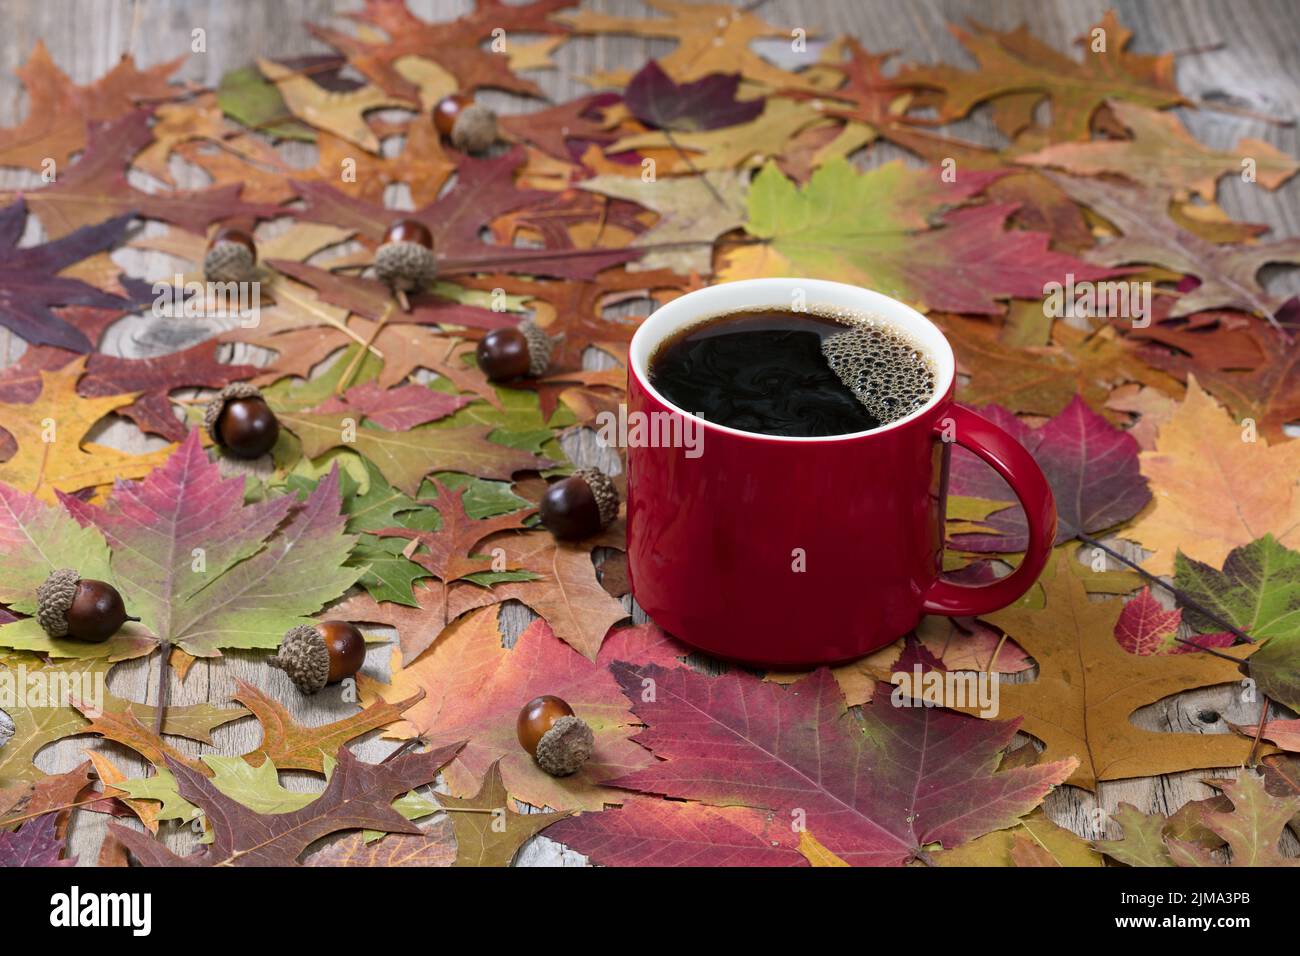 Gran taza roja de café oscuro caliente y hojas otoñales sobre rústicas tablas de madera Foto de stock